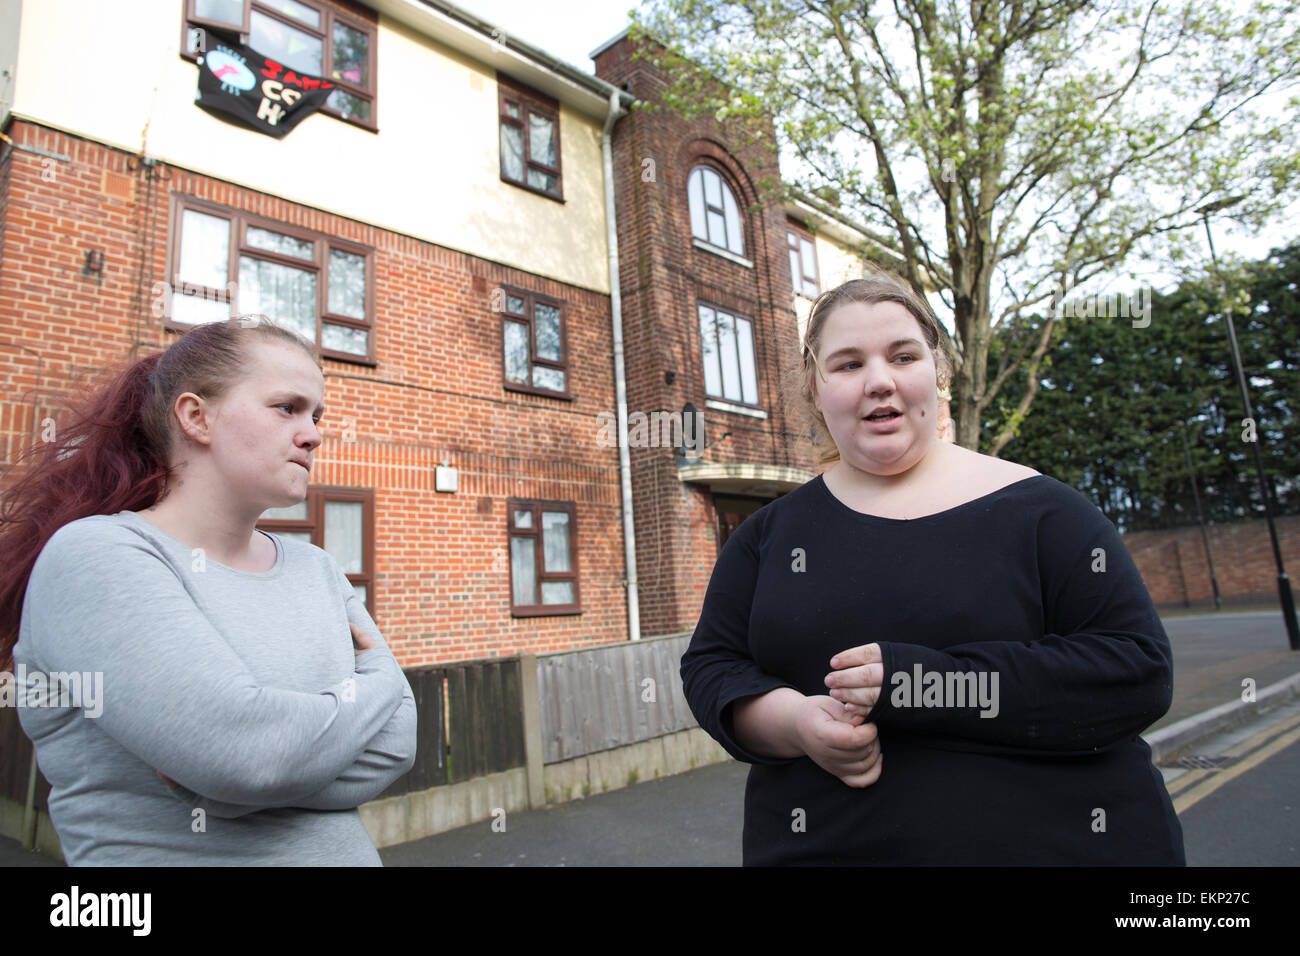 Focus E15 Mères activistes logement Pierre Jasmin (à droite) et Samantha Middleton (gauche) à Newham, dans le sud-est de Londres, Angleterre, Royaume-Uni Banque D'Images